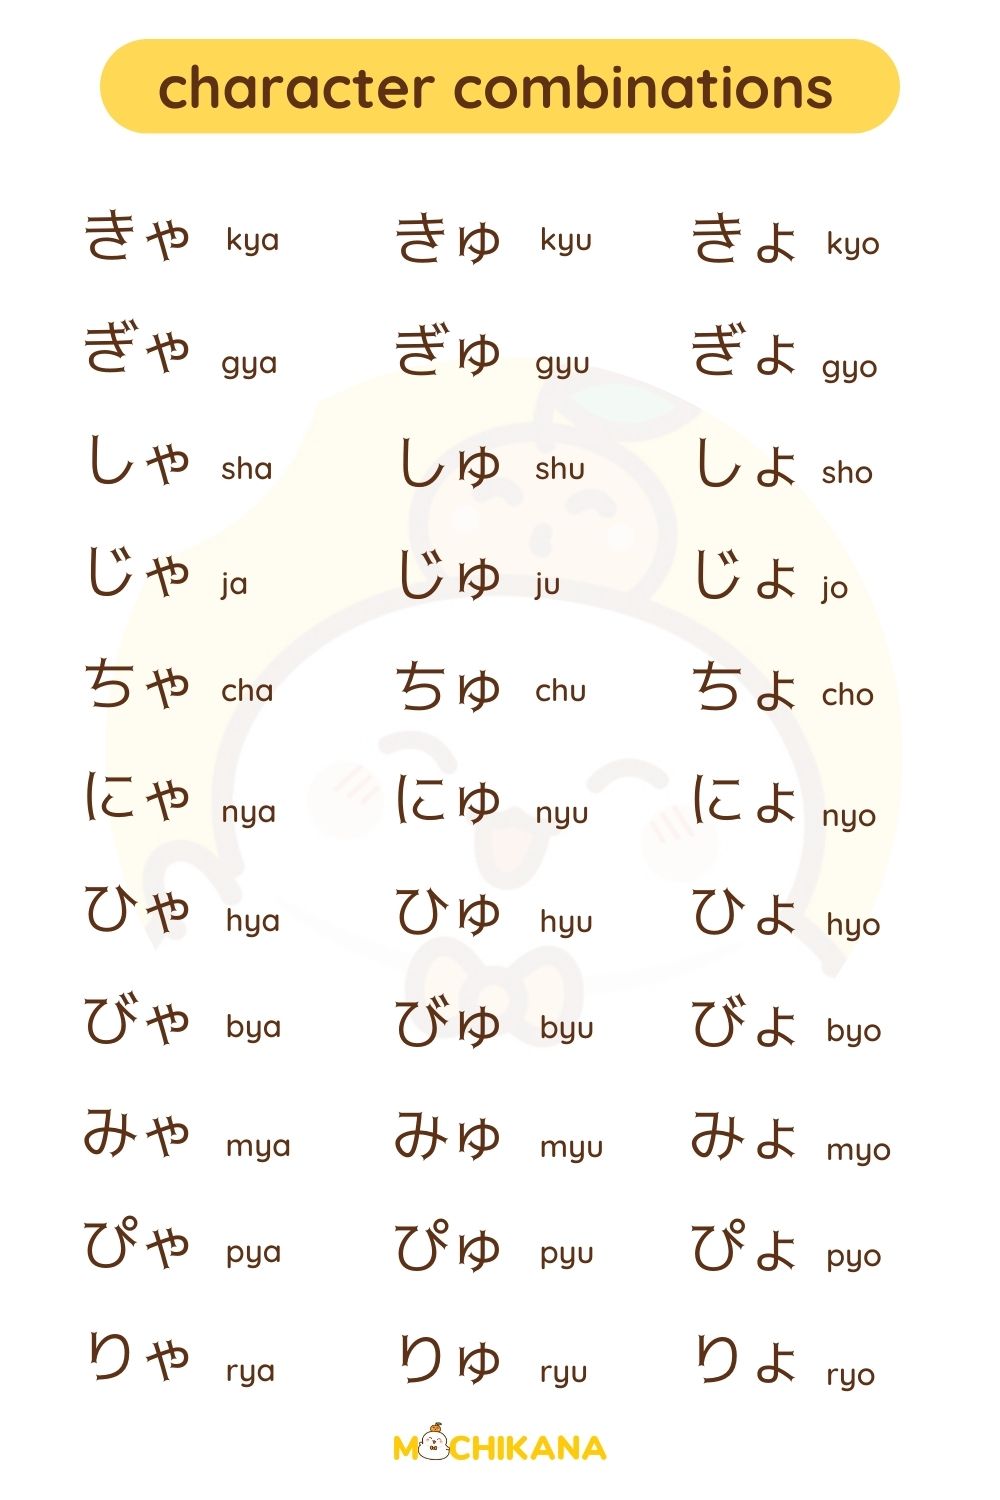 yoon chart in Hiragana